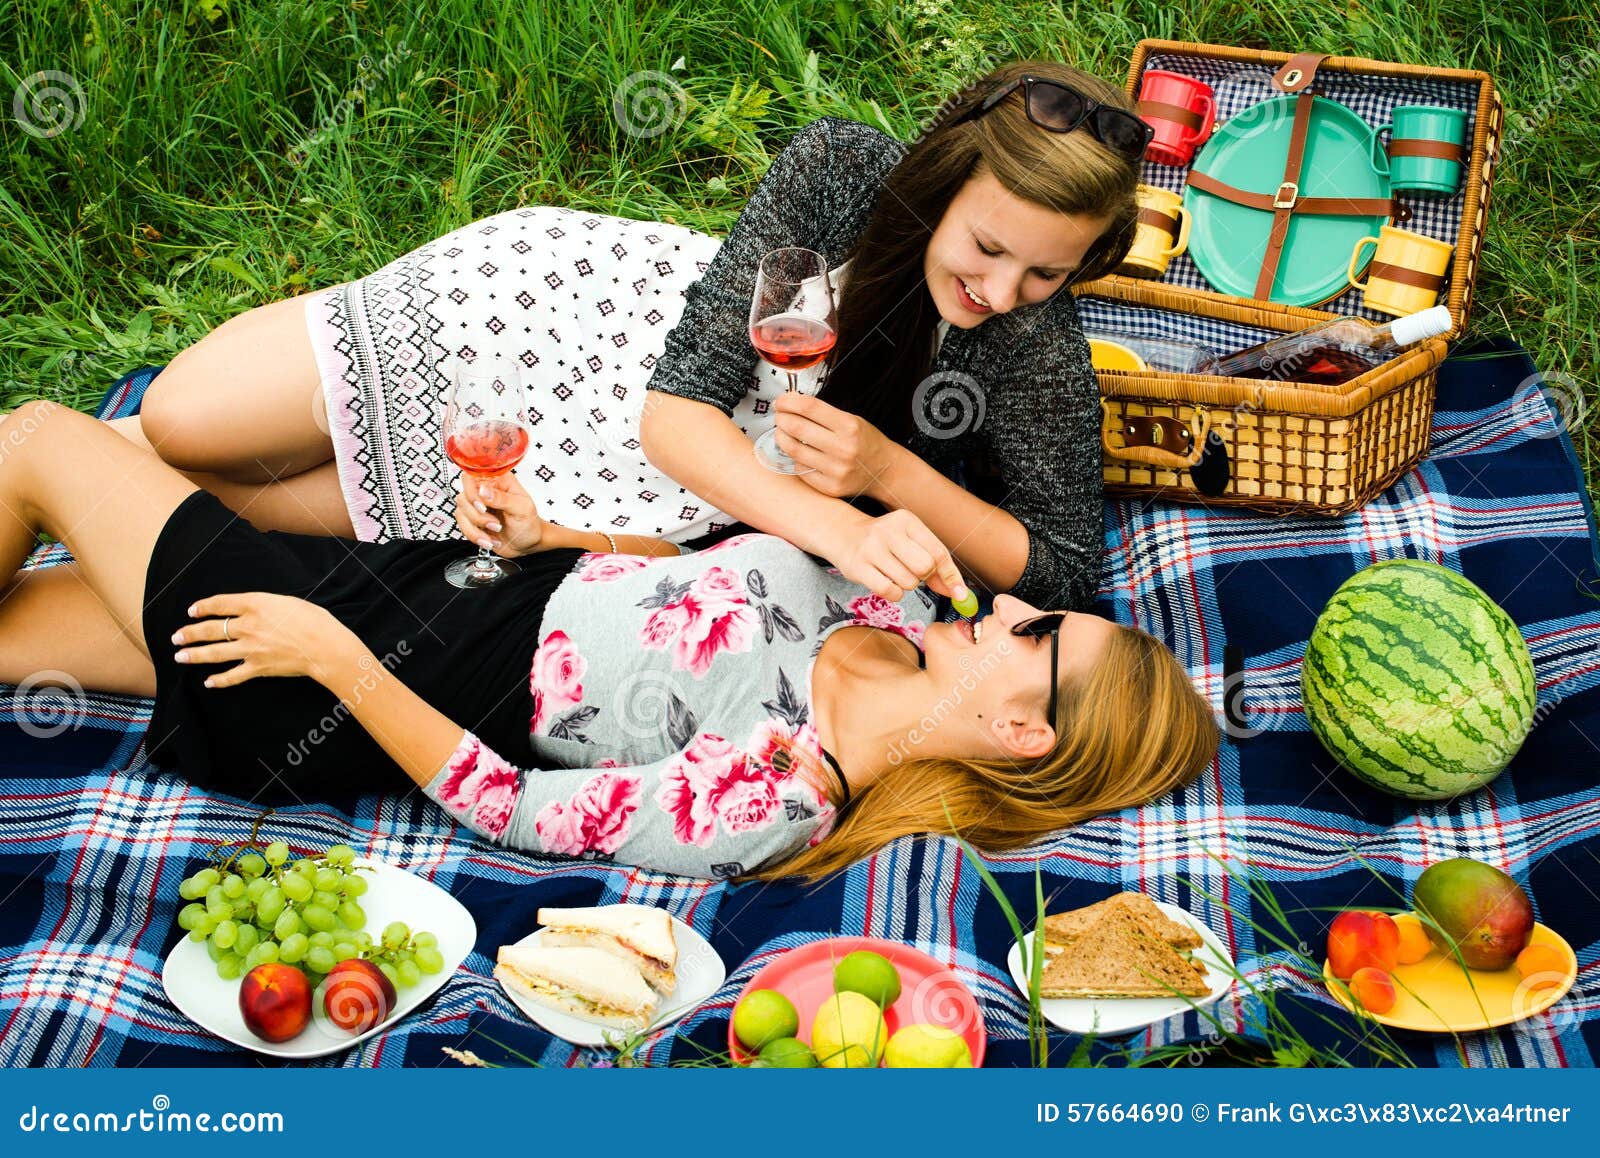 Бабы на пикнике. Пикник с подругой. Девушка на пикнике. Две девушки на пикнике. Красивые девушки на пикнике.